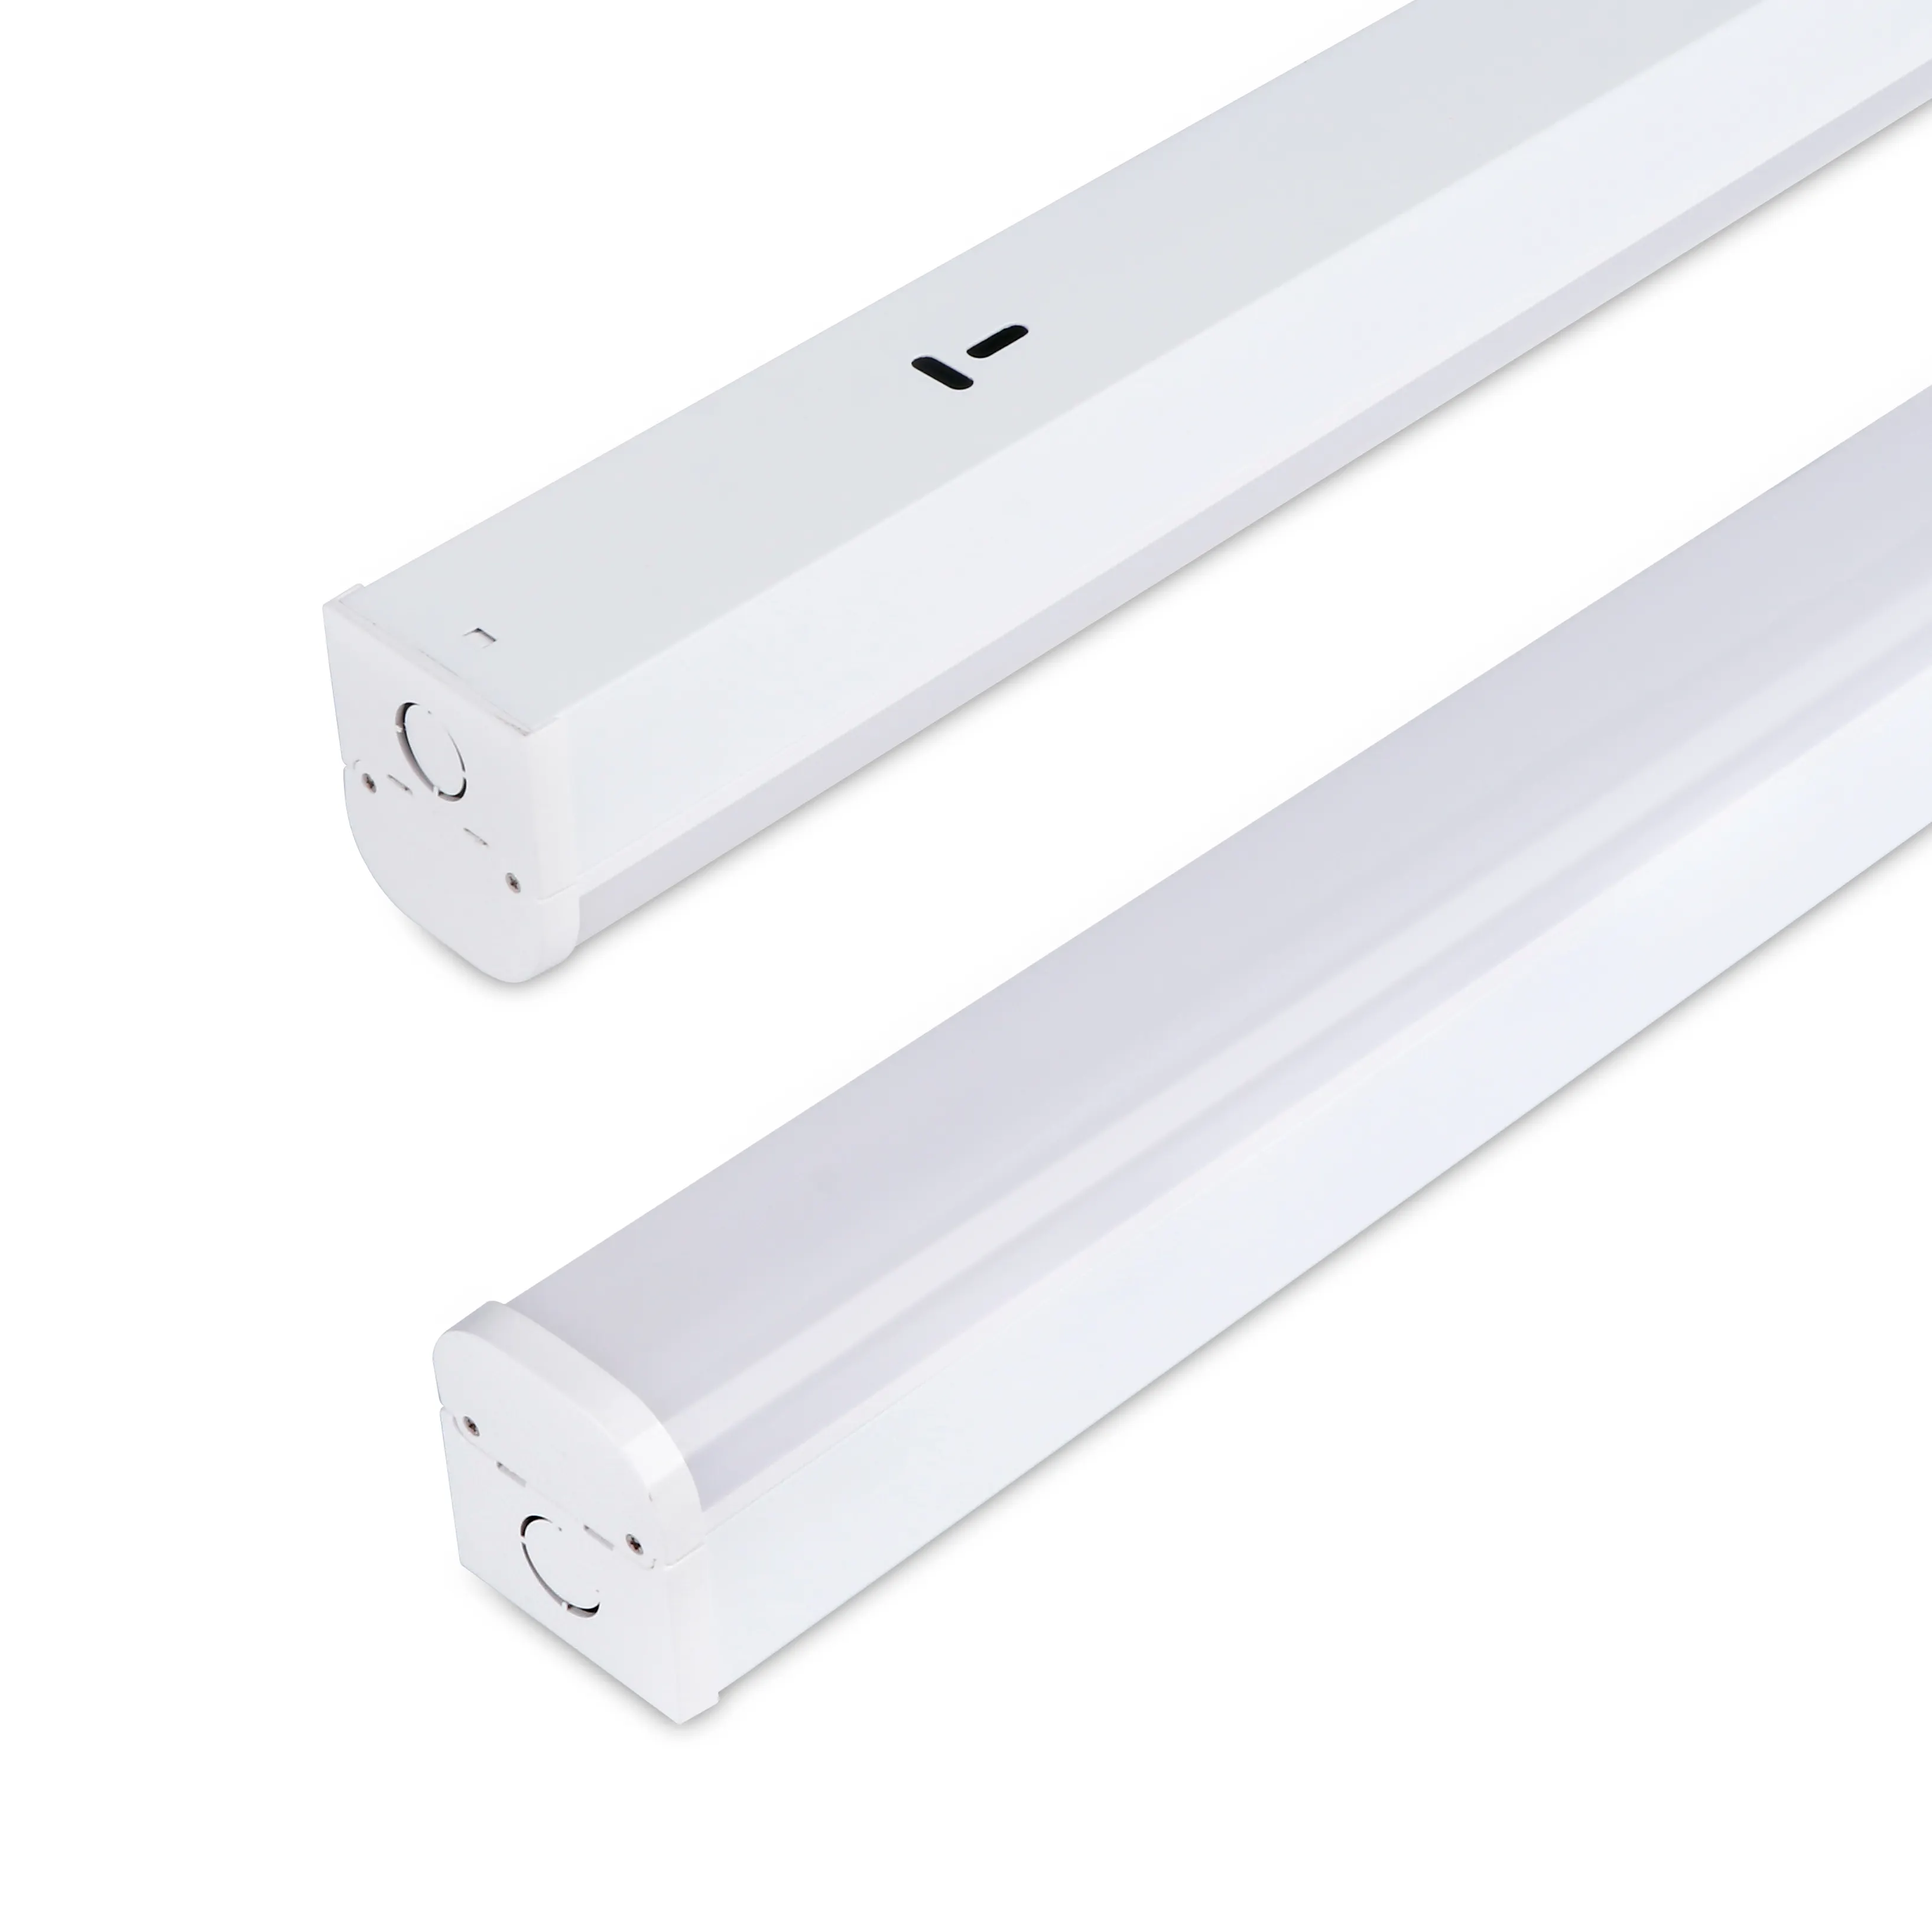 Tavana monte lamba plastik kapak Led tüp çıta ışığı marka özel tasarım Led alüminyum yeni Ce